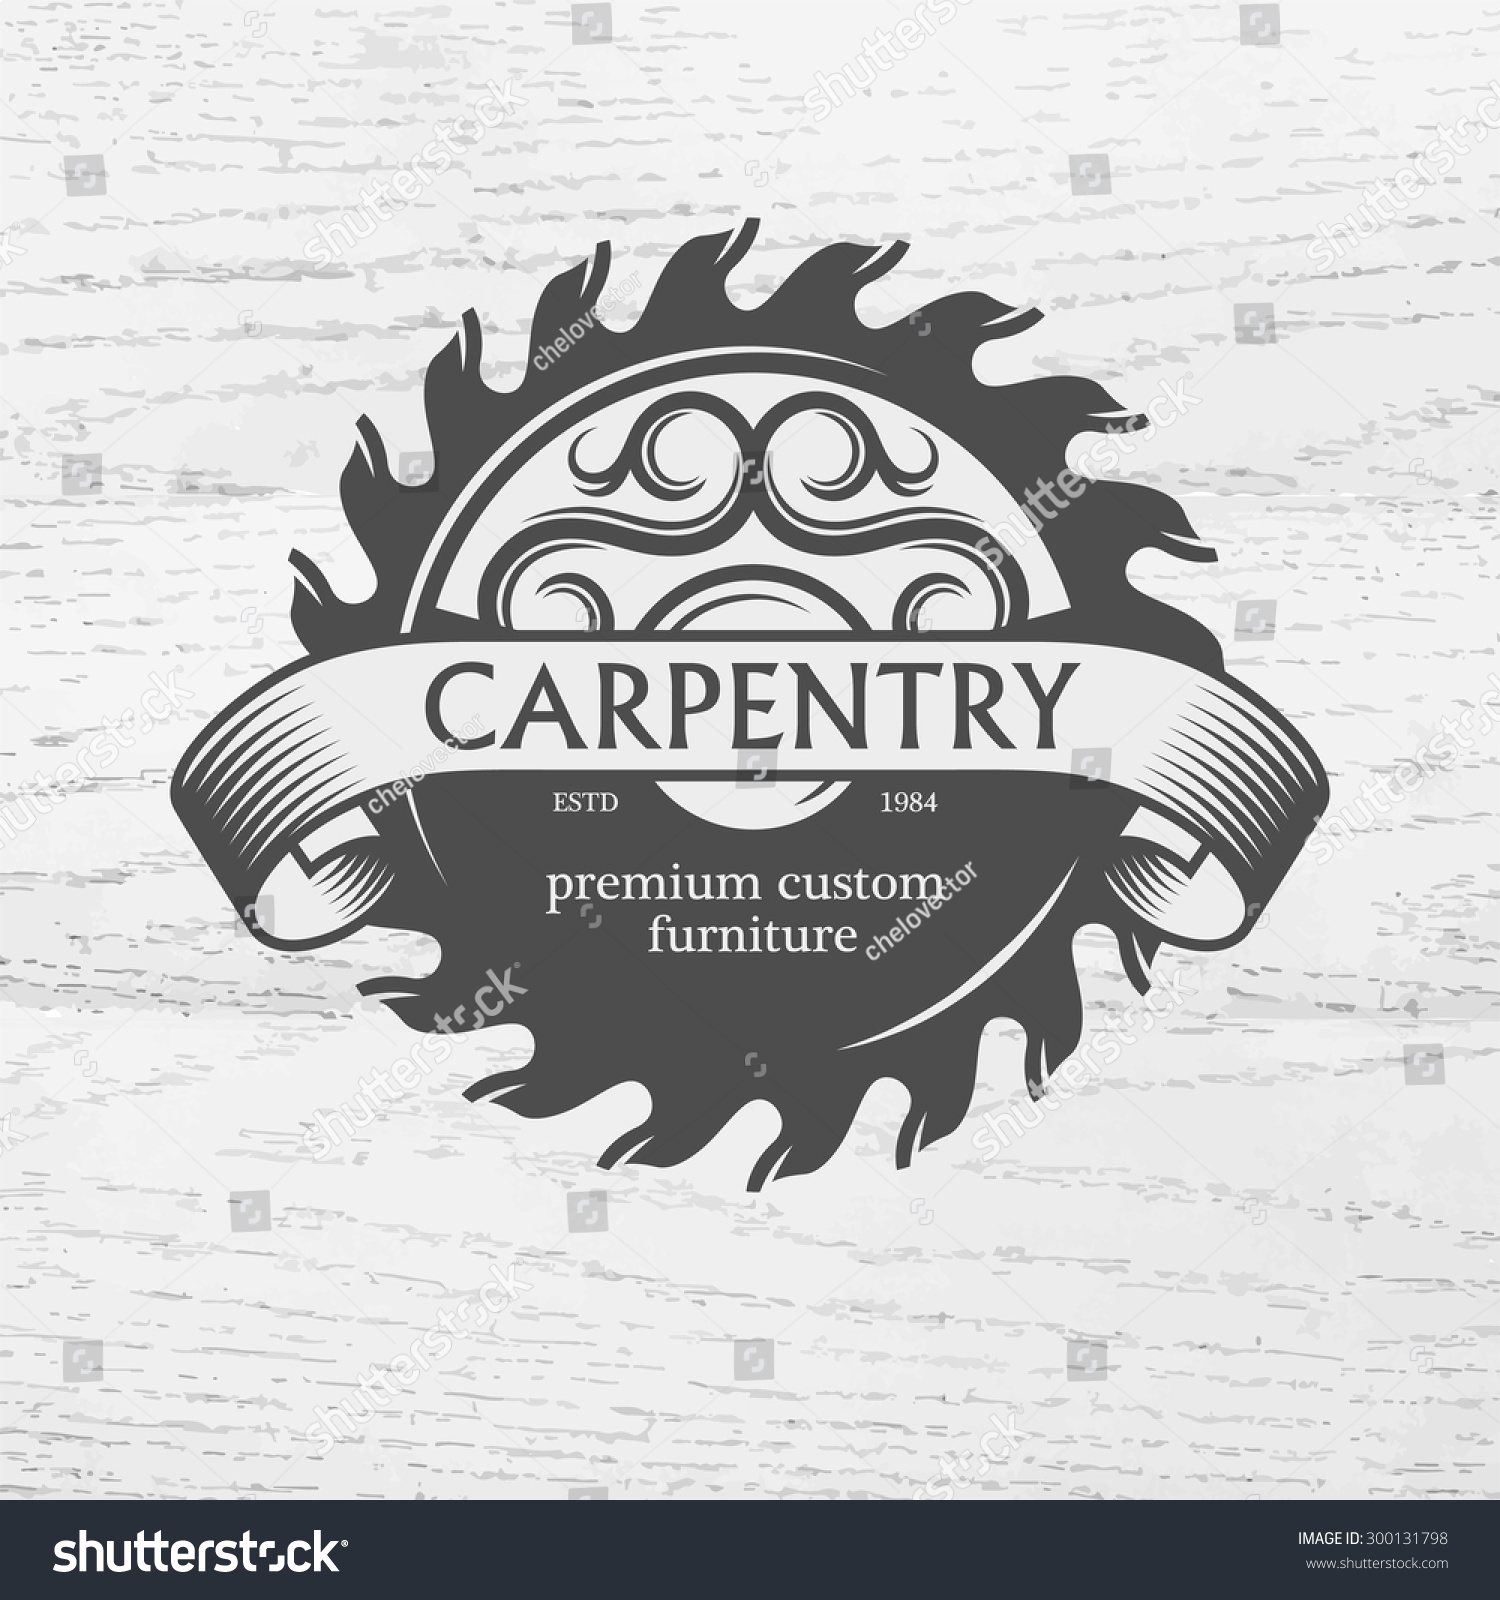 Carpenter Design Element In Vintage Style For Logo Label 